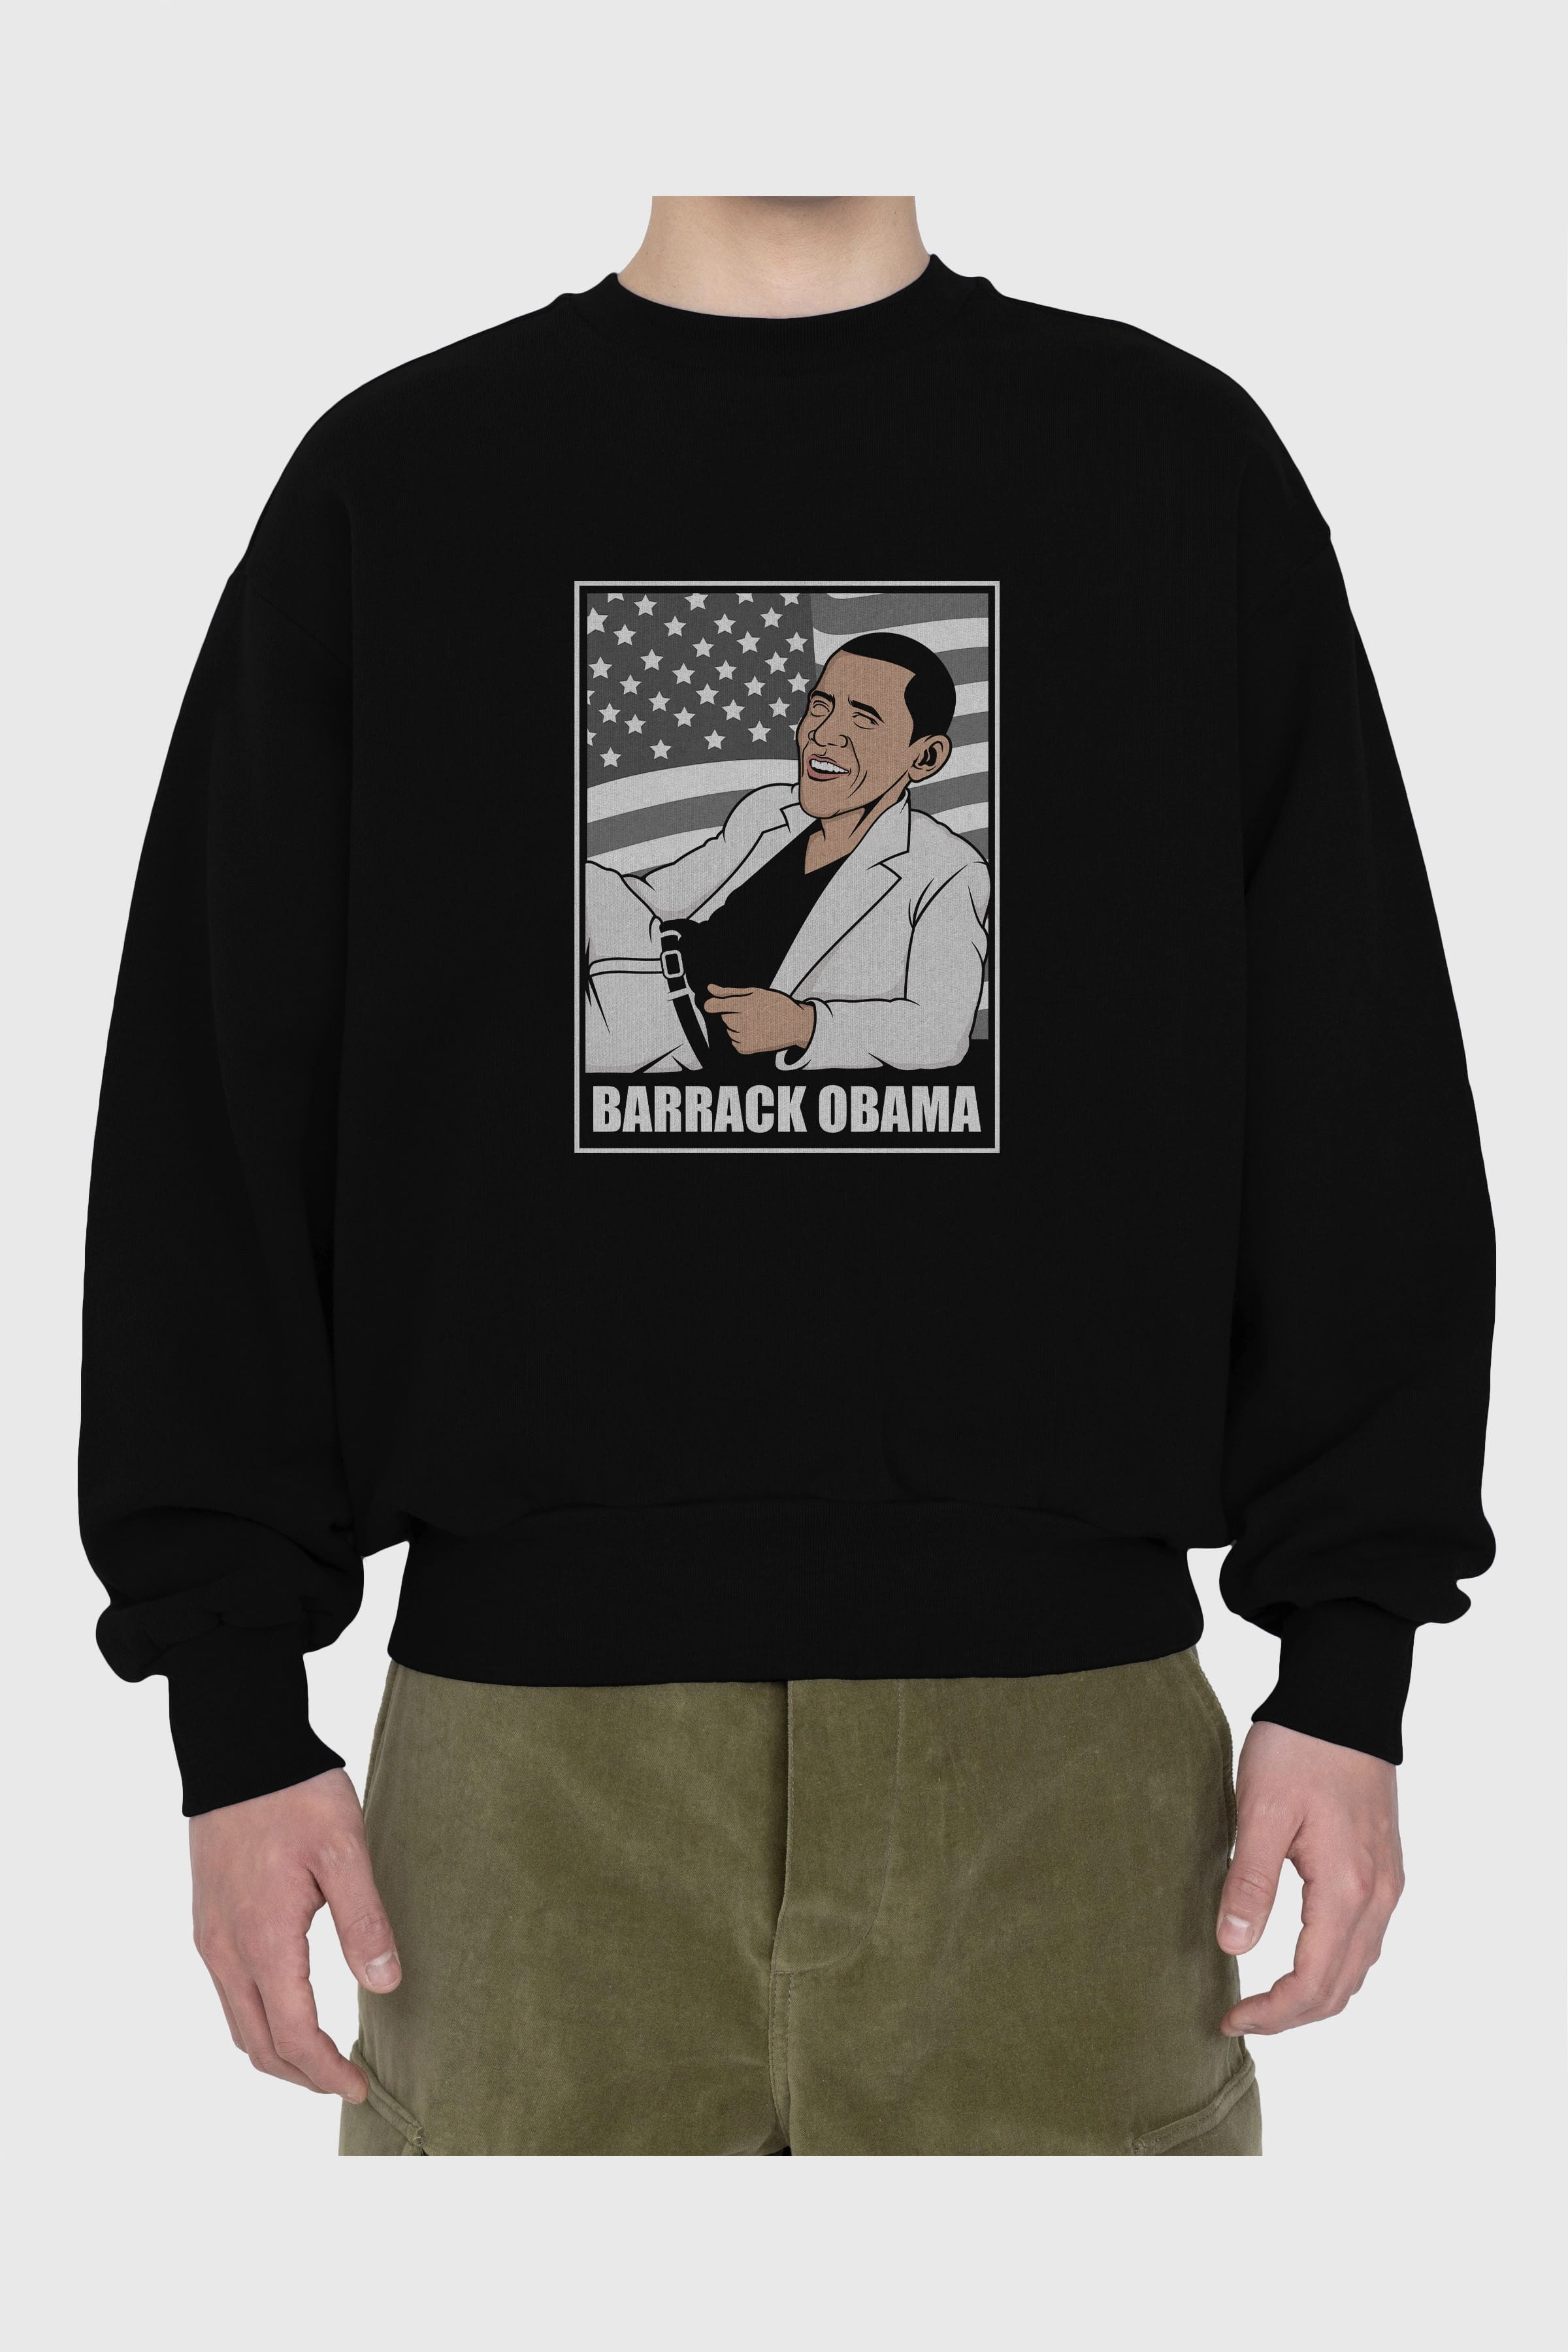 Obama Thriller Ön Baskılı Oversize Sweatshirt Erkek Kadın Unisex